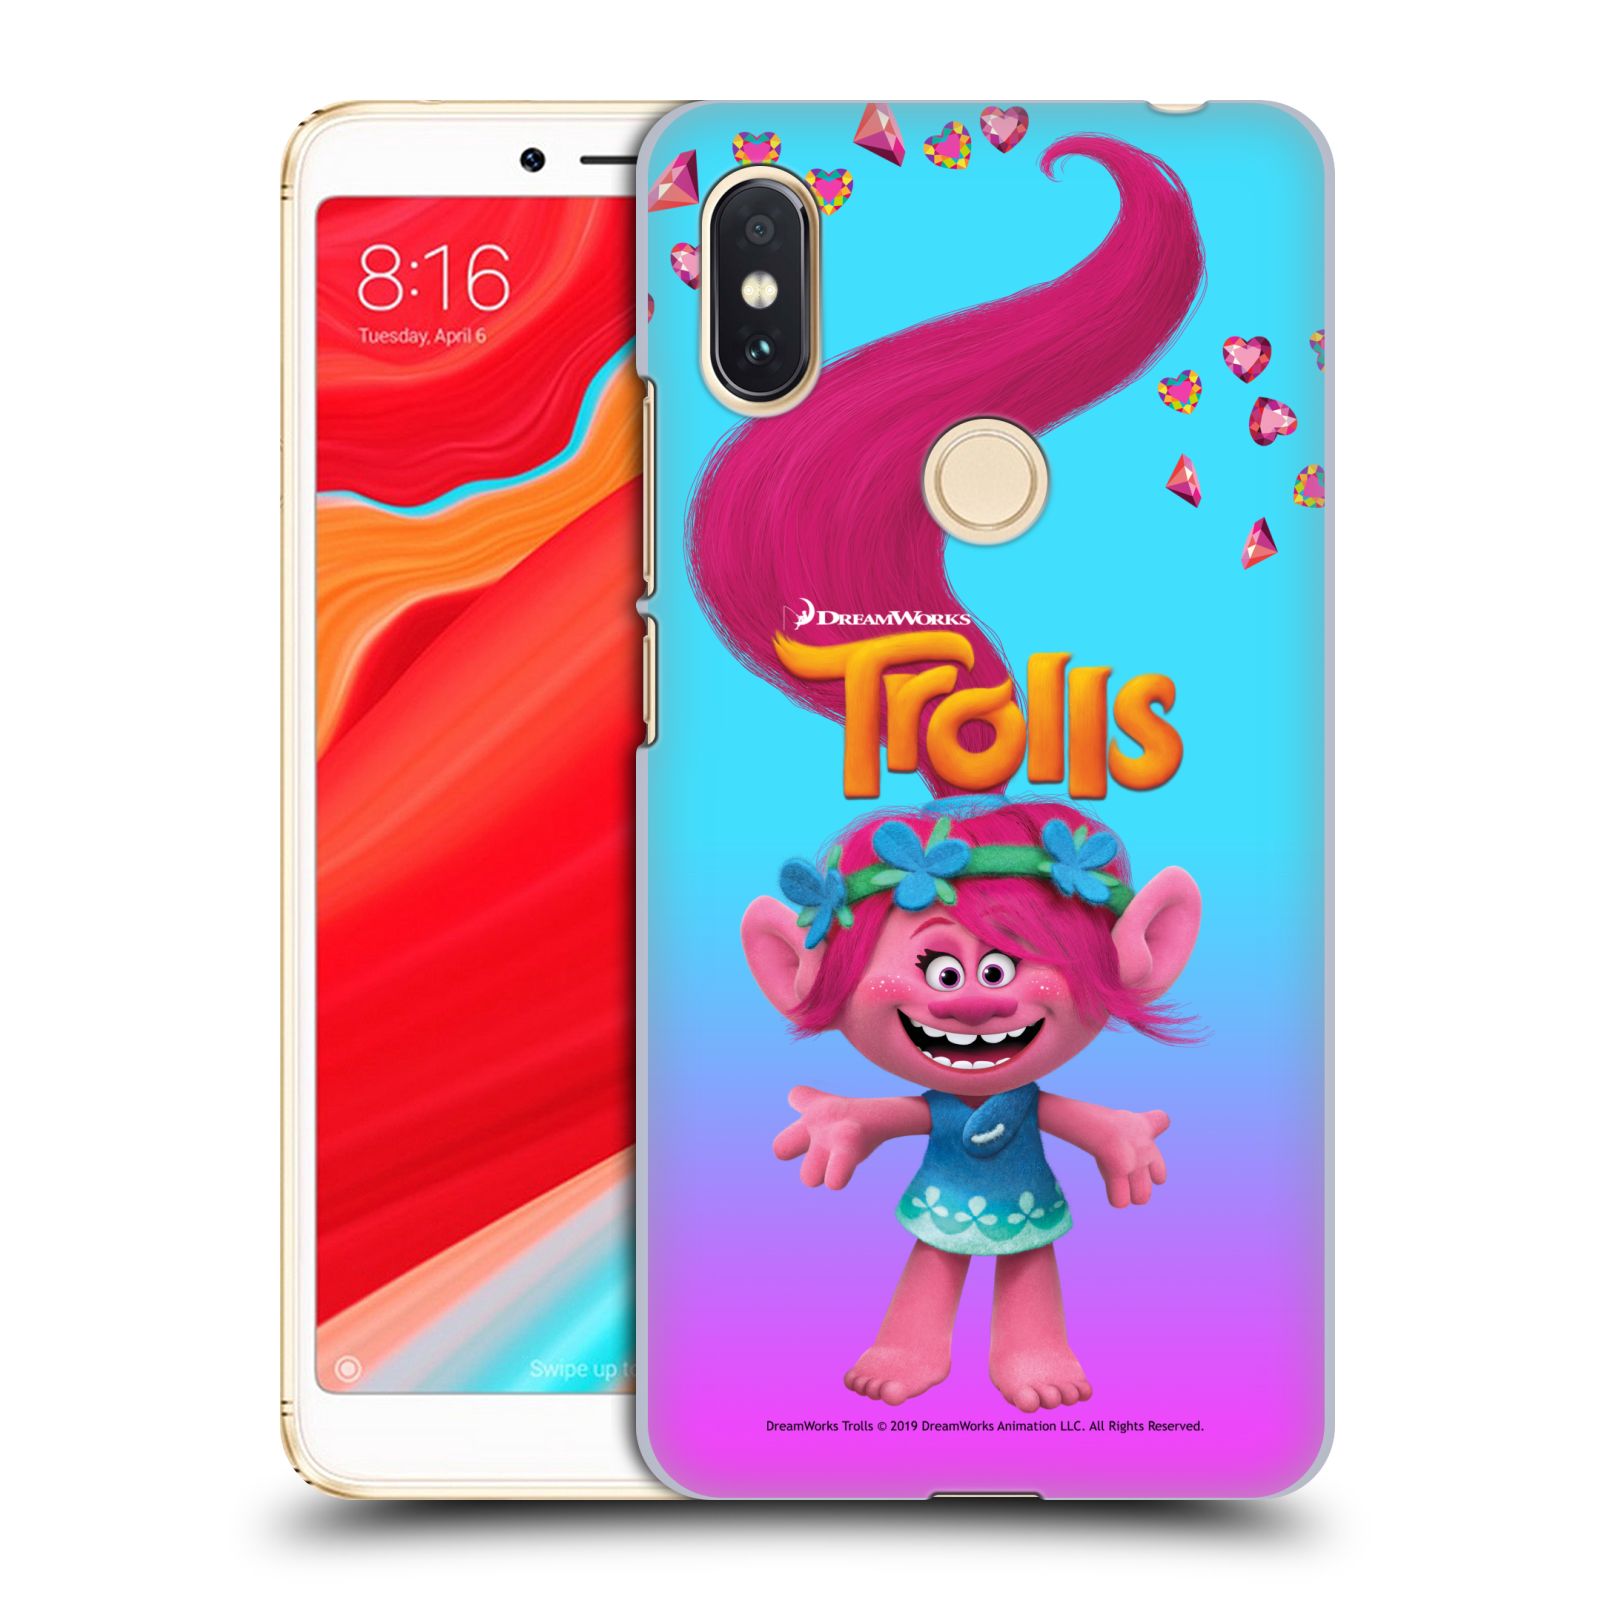 Pouzdro na mobil Xiaomi Redmi S2 - HEAD CASE - Pohádka - Trollové skřítek holčička Poppy